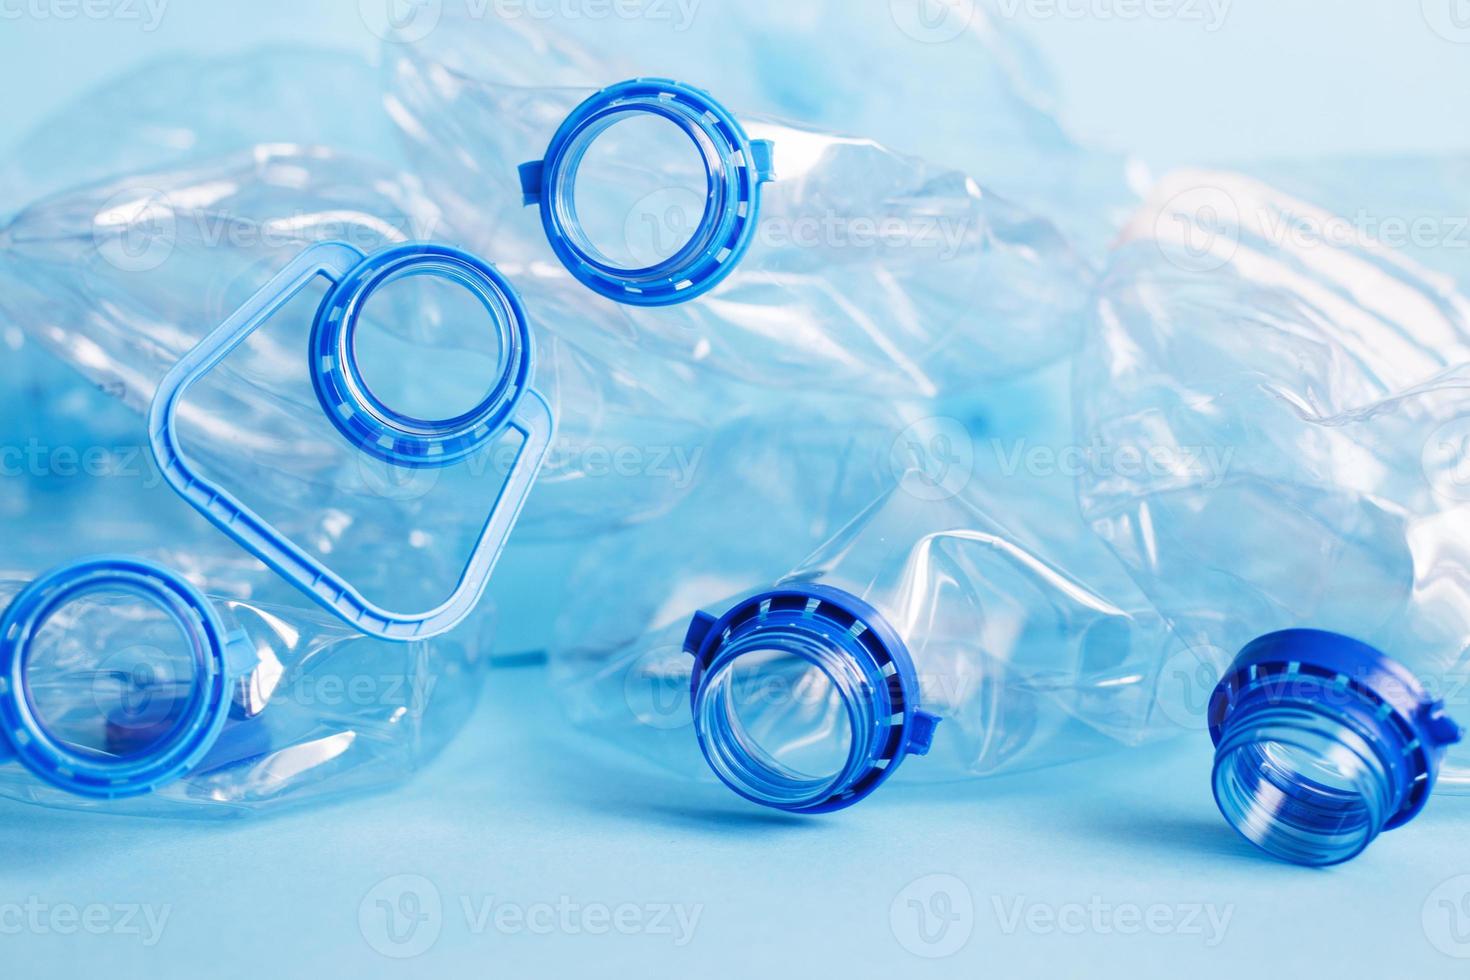 Viele leere, zerknitterte gebrauchte Plastikflaschen auf blauem Hintergrund. abfall- und verschmutzungskonzept foto